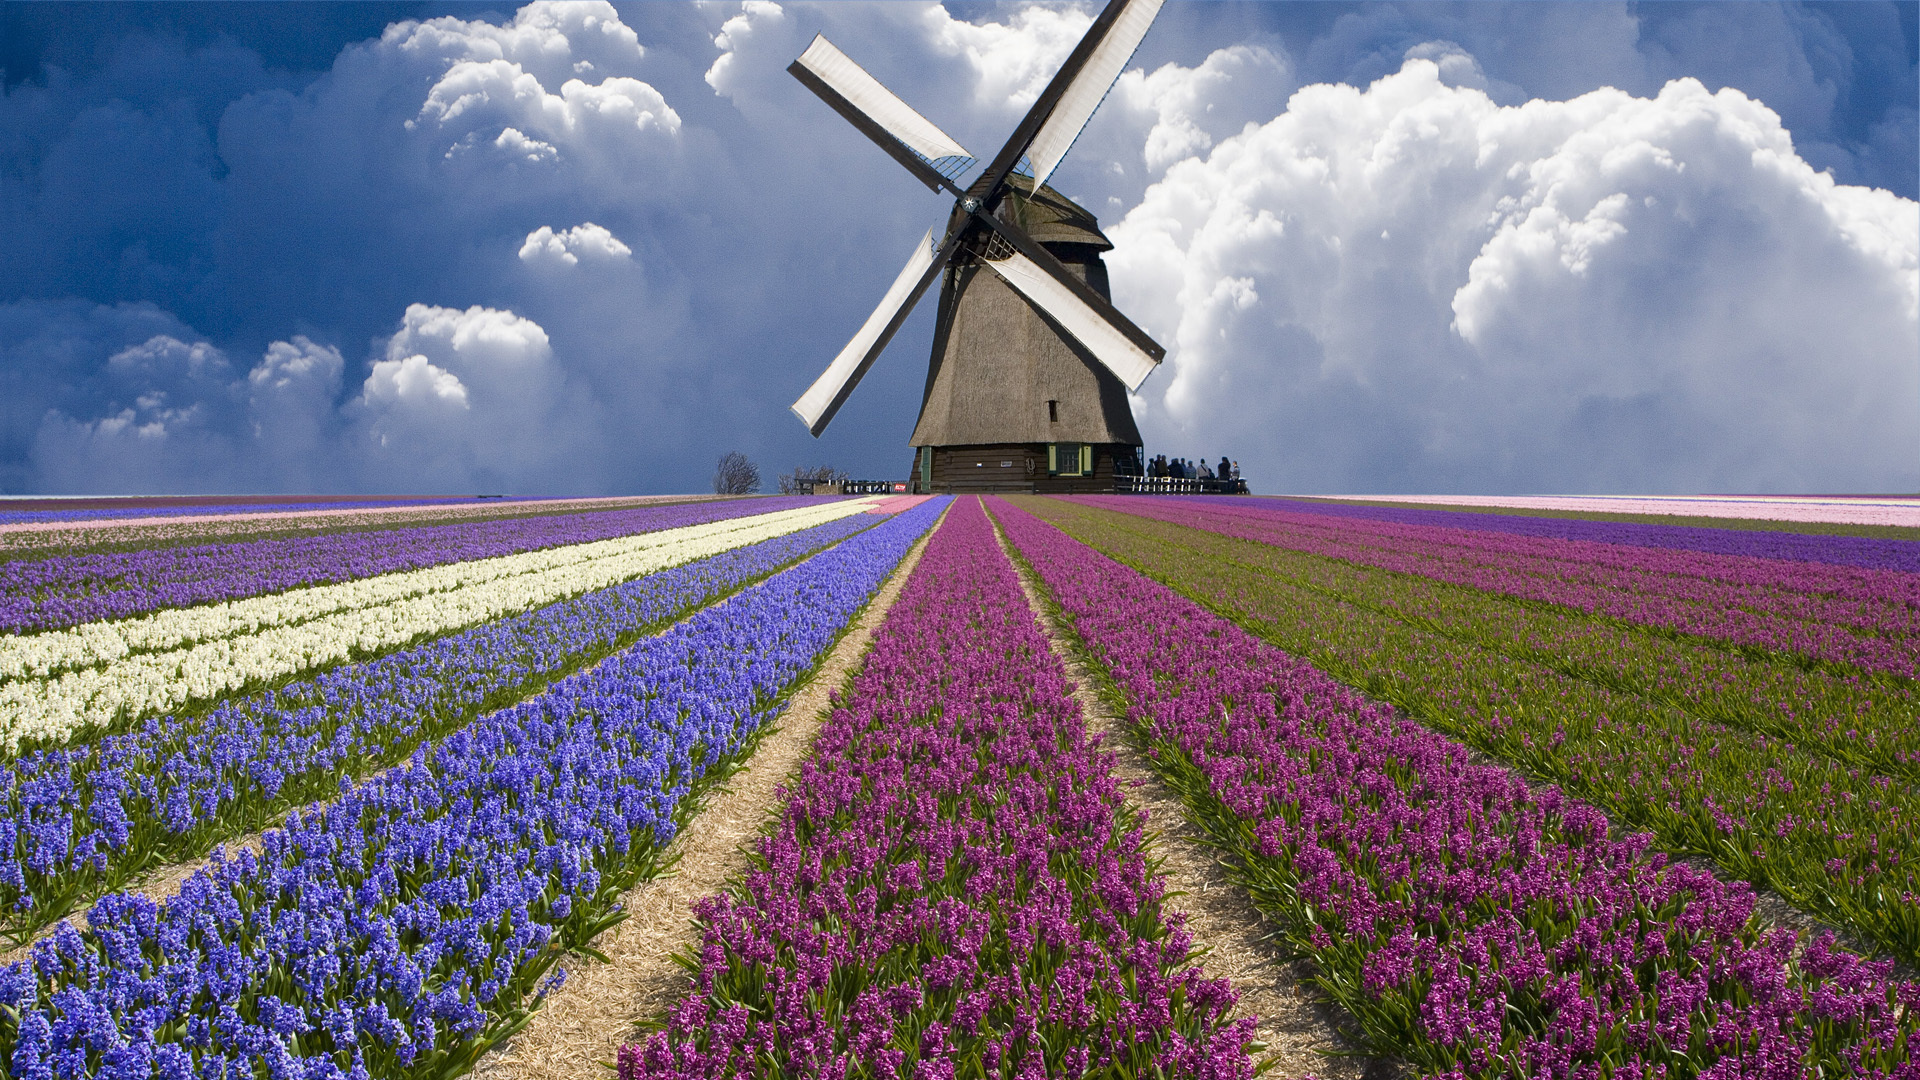 Велик в поле. Ветряная мельница Нидерланды. Парк кёкенхоф Голландия мельница. Голландия тюльпановые поля мельница. Ветряные мельницы в Голландии.